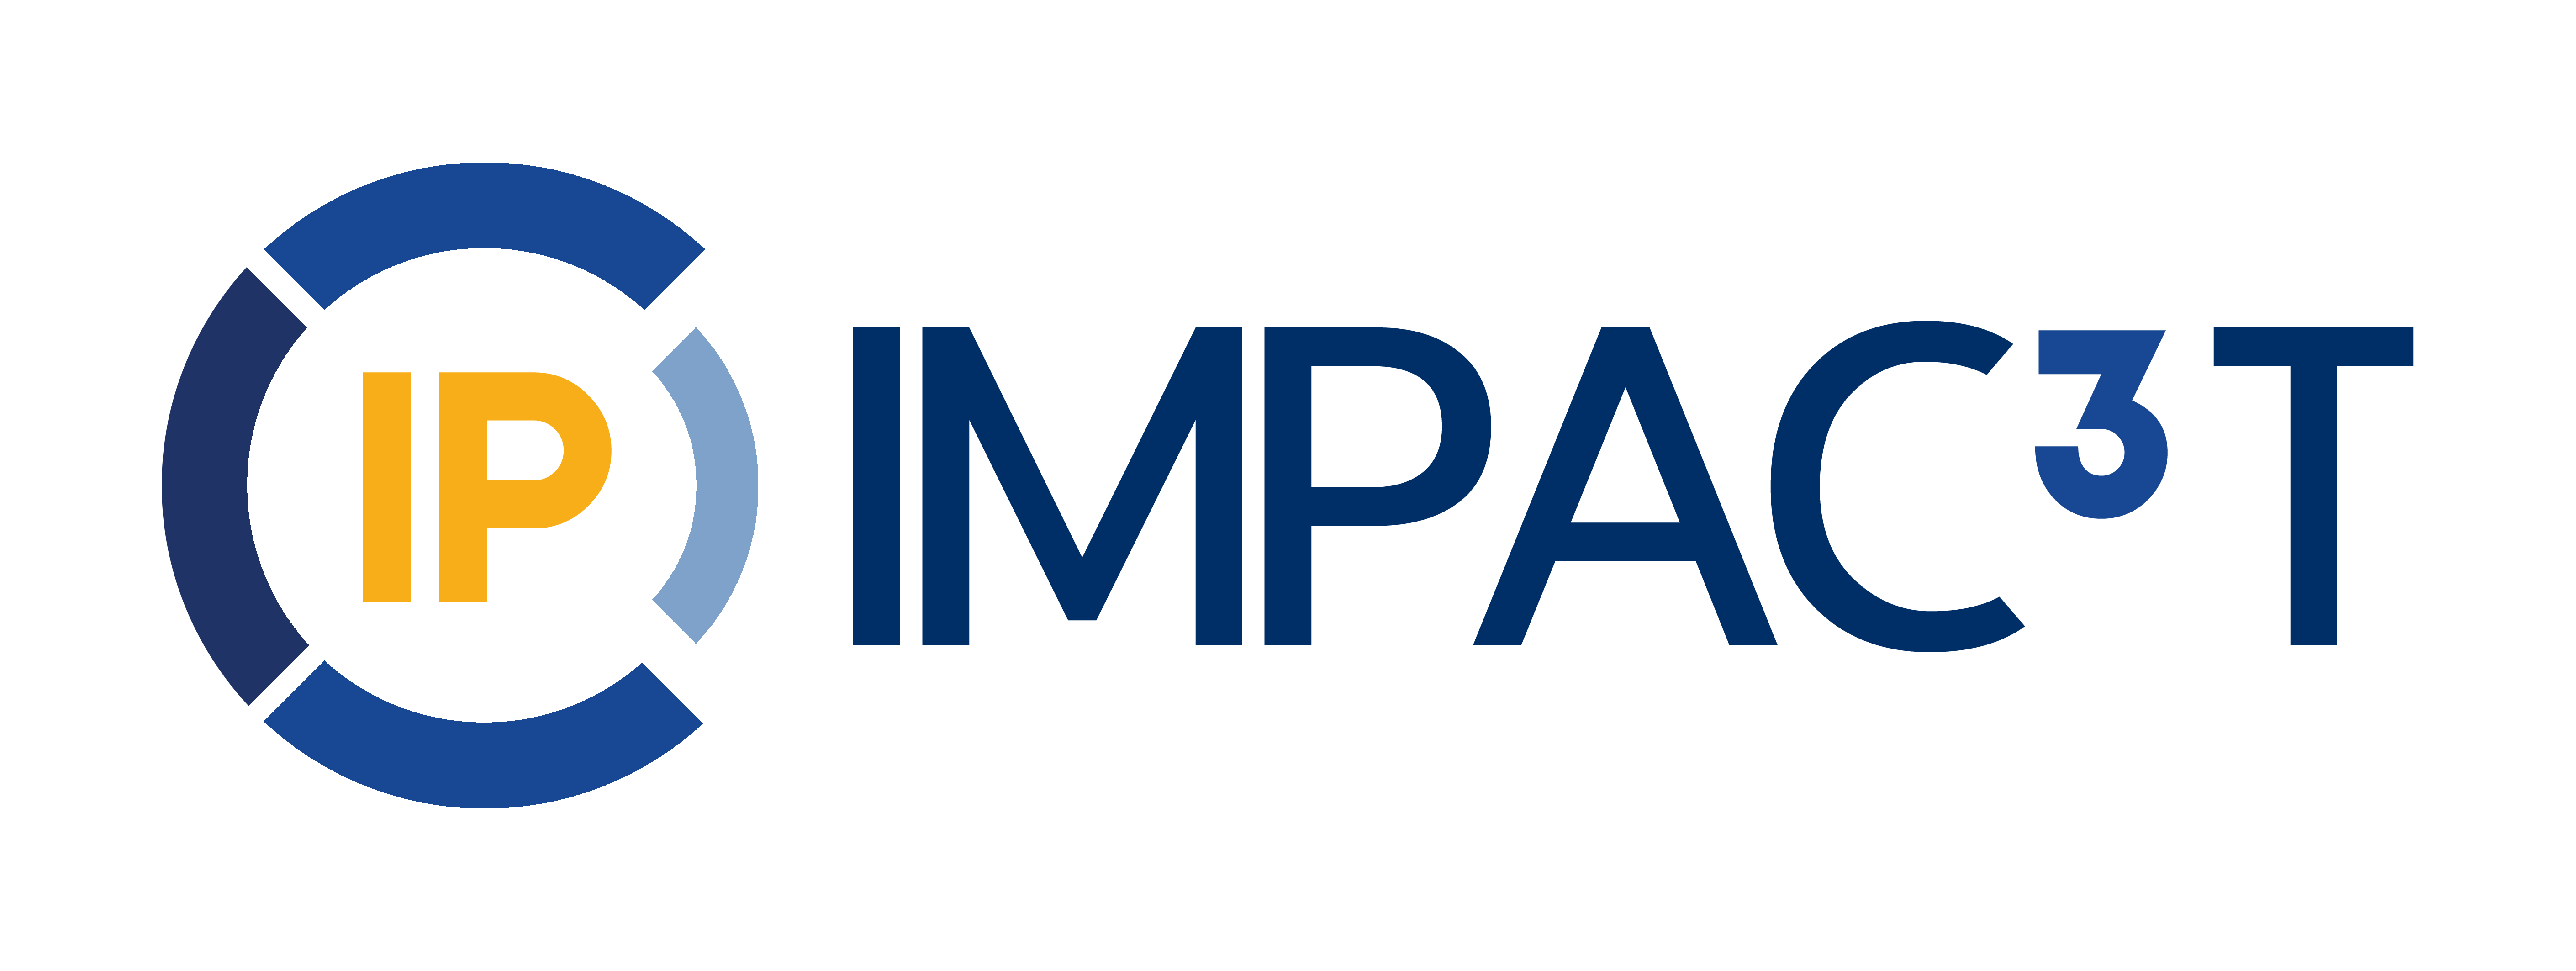 IMPAC3T-IP